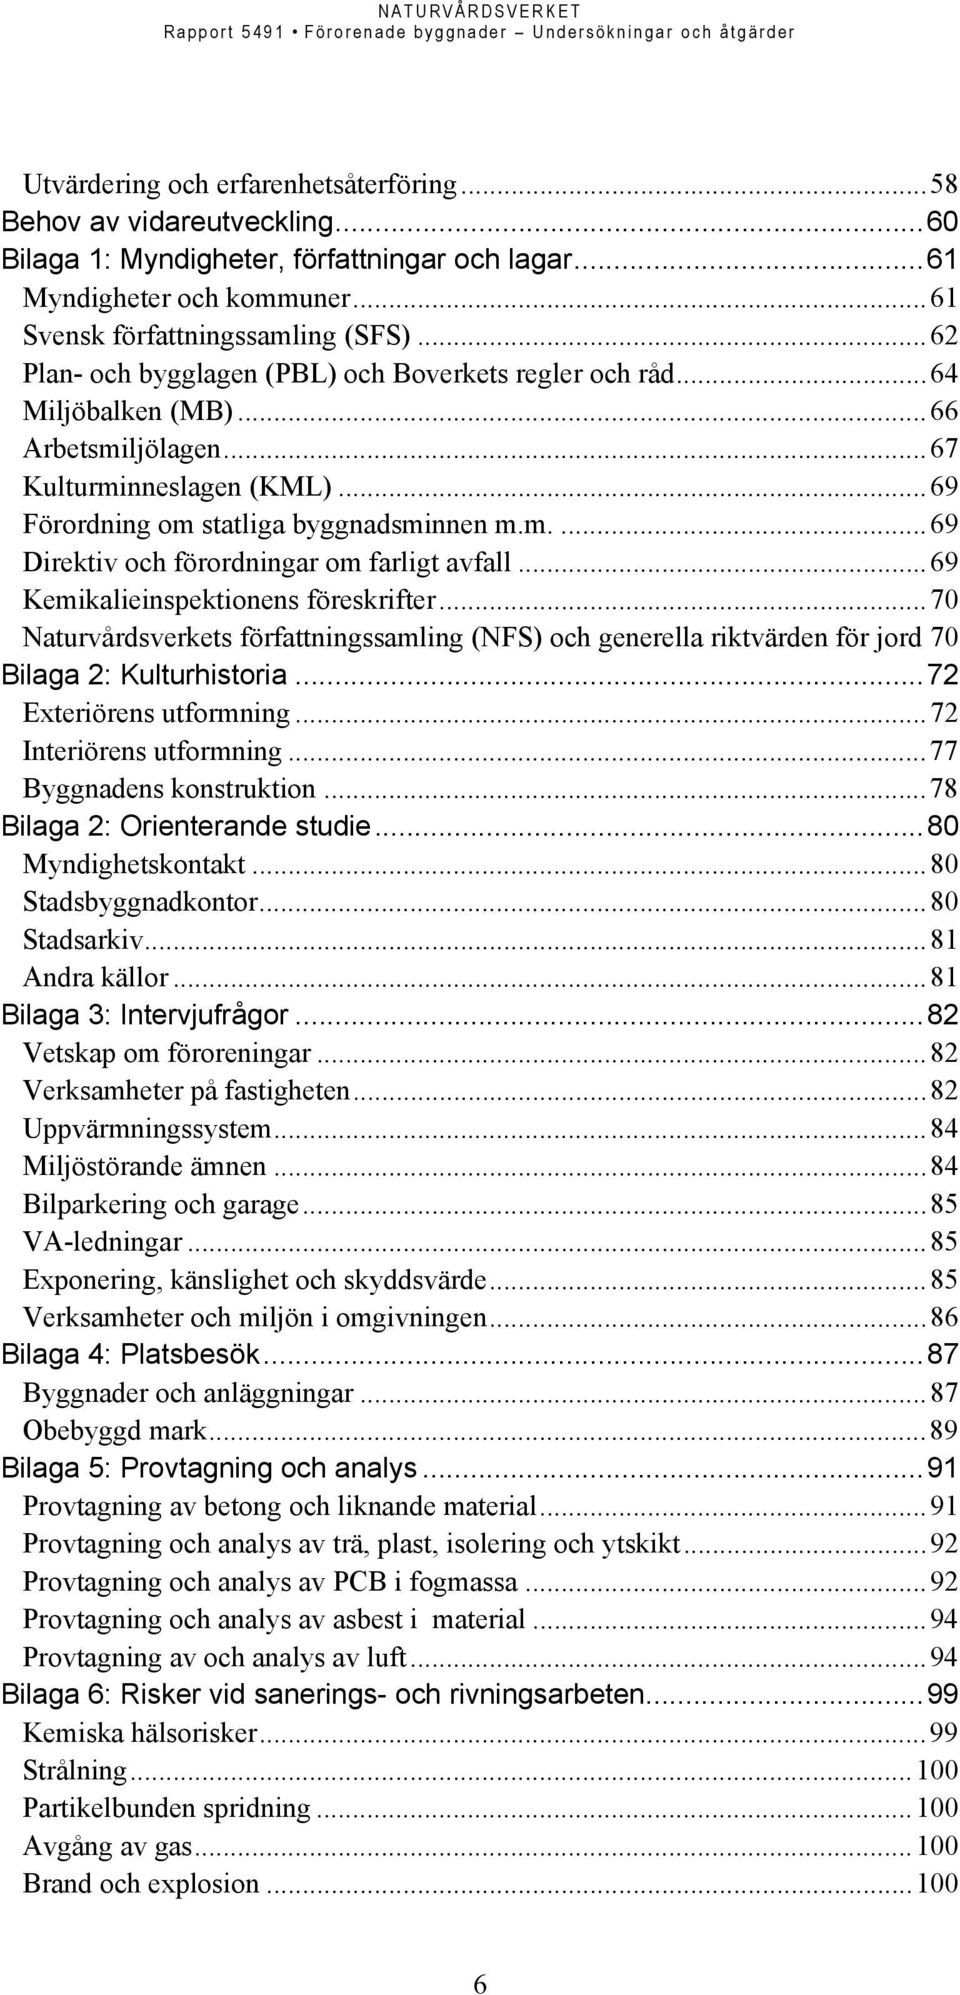 ..69 Kemikalieinspektionens föreskrifter...70 Naturvårdsverkets författningssamling (NFS) och generella riktvärden för jord 70 Bilaga 2: Kulturhistoria...72 Exteriörens utformning.